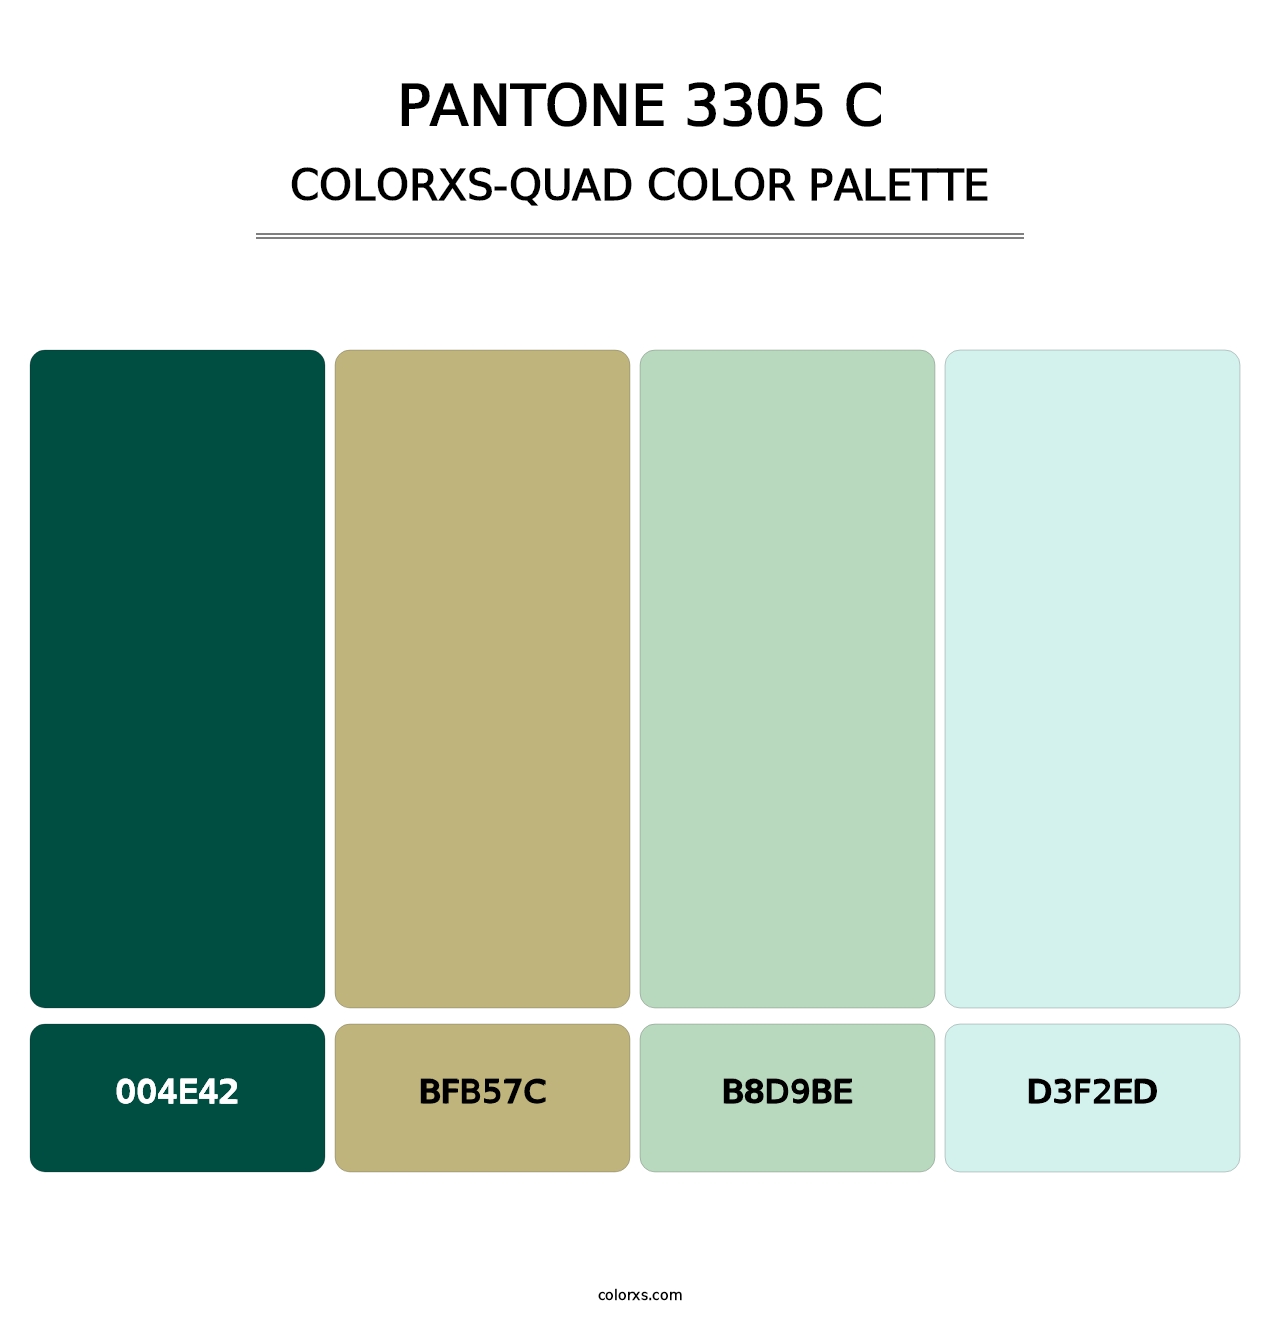 PANTONE 3305 C - Colorxs Quad Palette